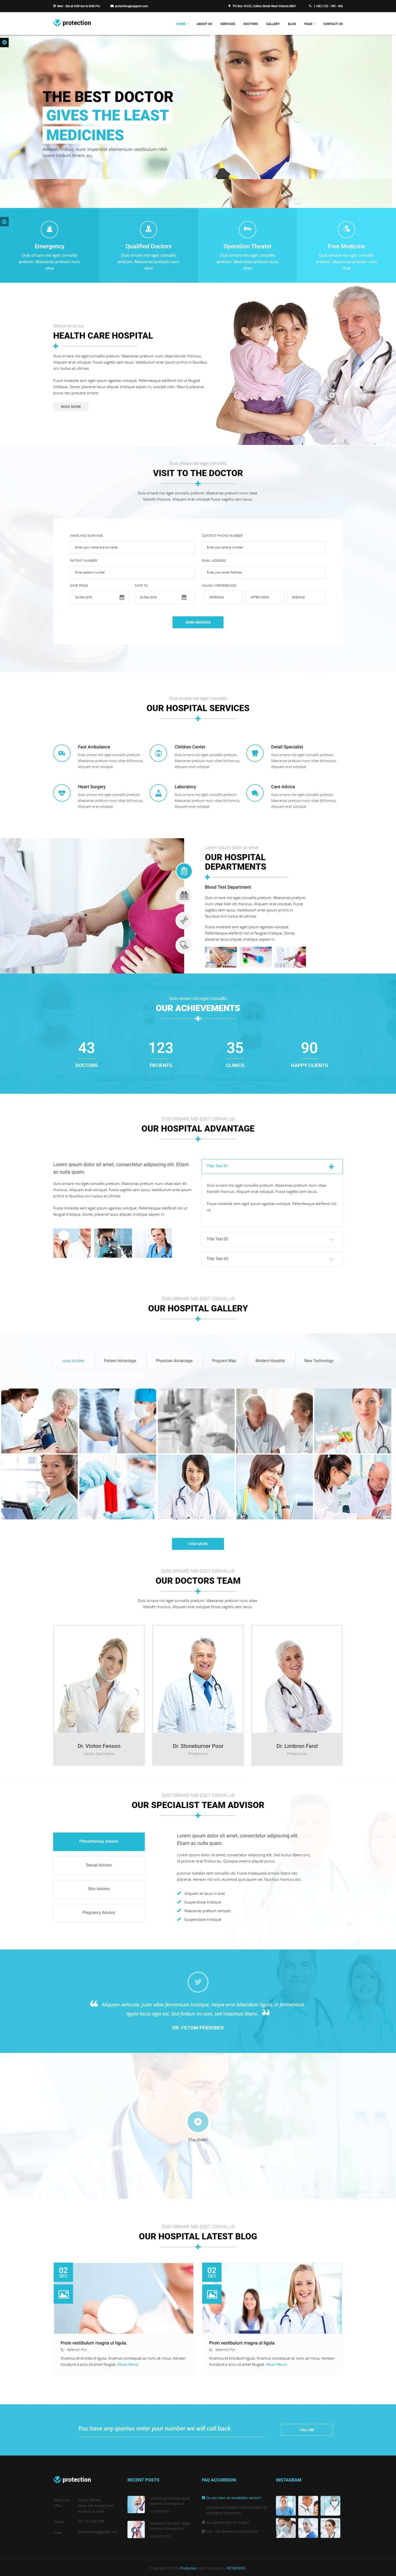 Mẫu website bệnh viện chuyên nghiệp, hiện đại, chuẩn seo